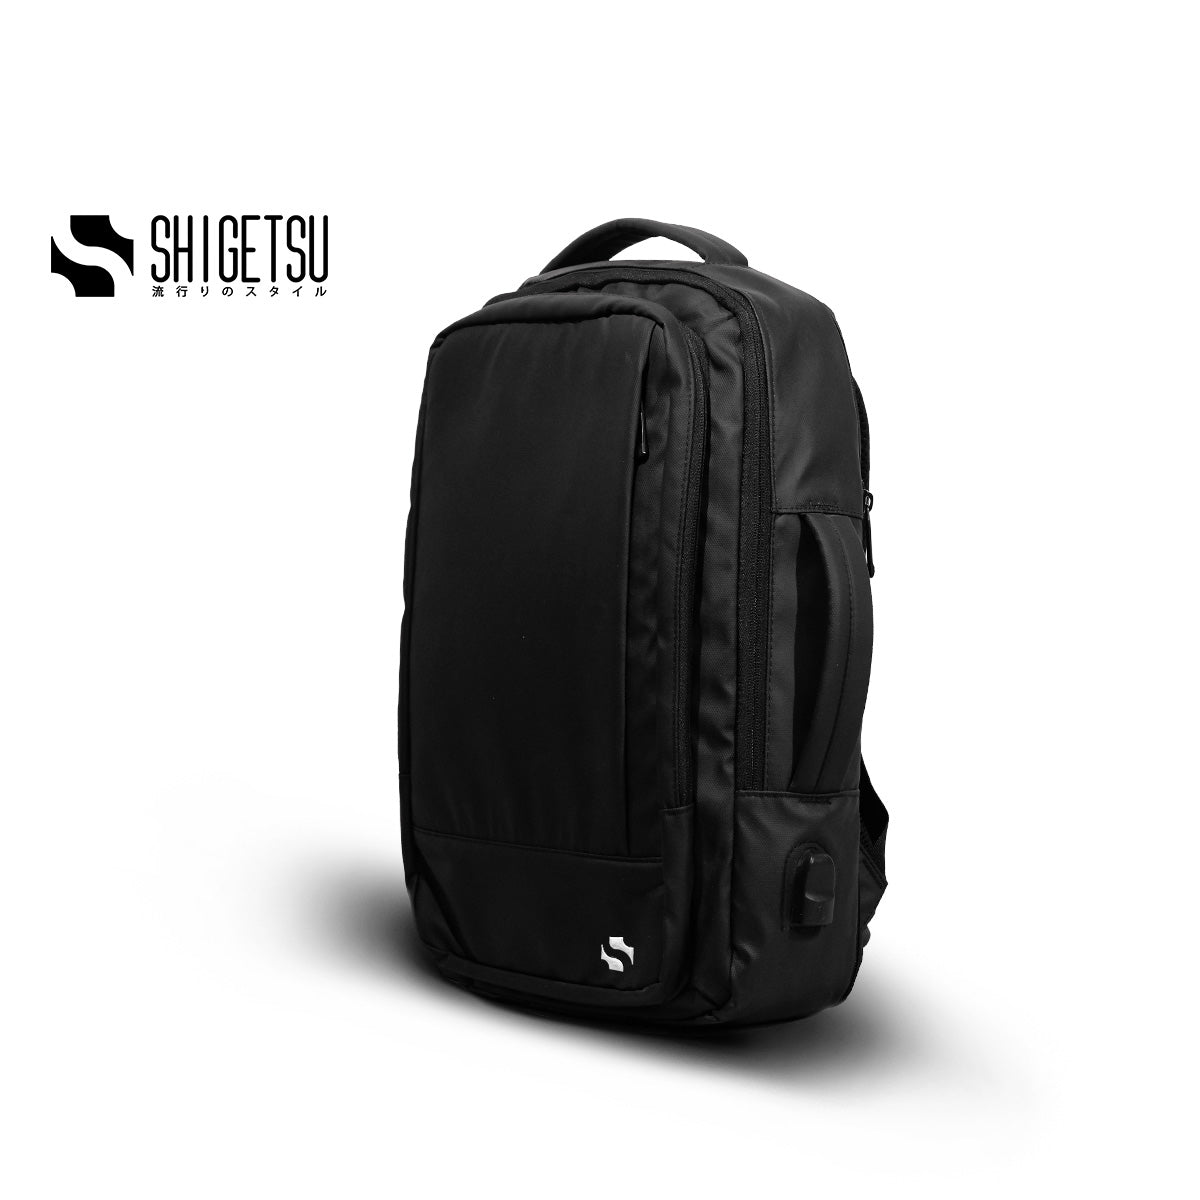 Shigetsu Pro SUWA Nylon Expandable Backpack Laptop Bag